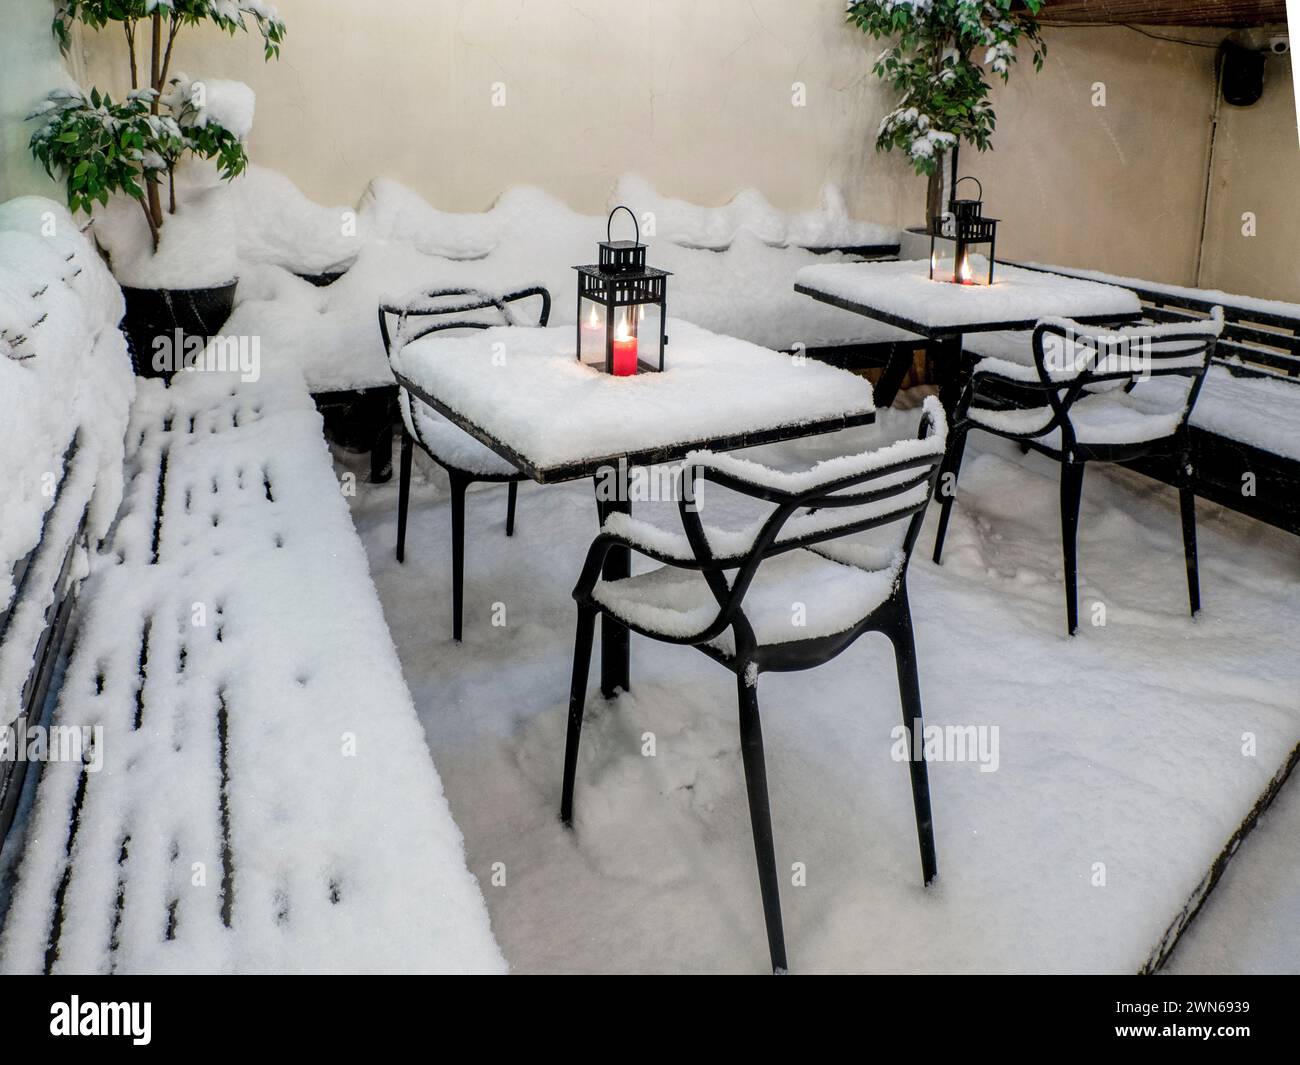 Tables et chaises recouvertes de neige fraîche en hiver, bougie rouge allumée sur la table recouverte de neige fraîche Banque D'Images